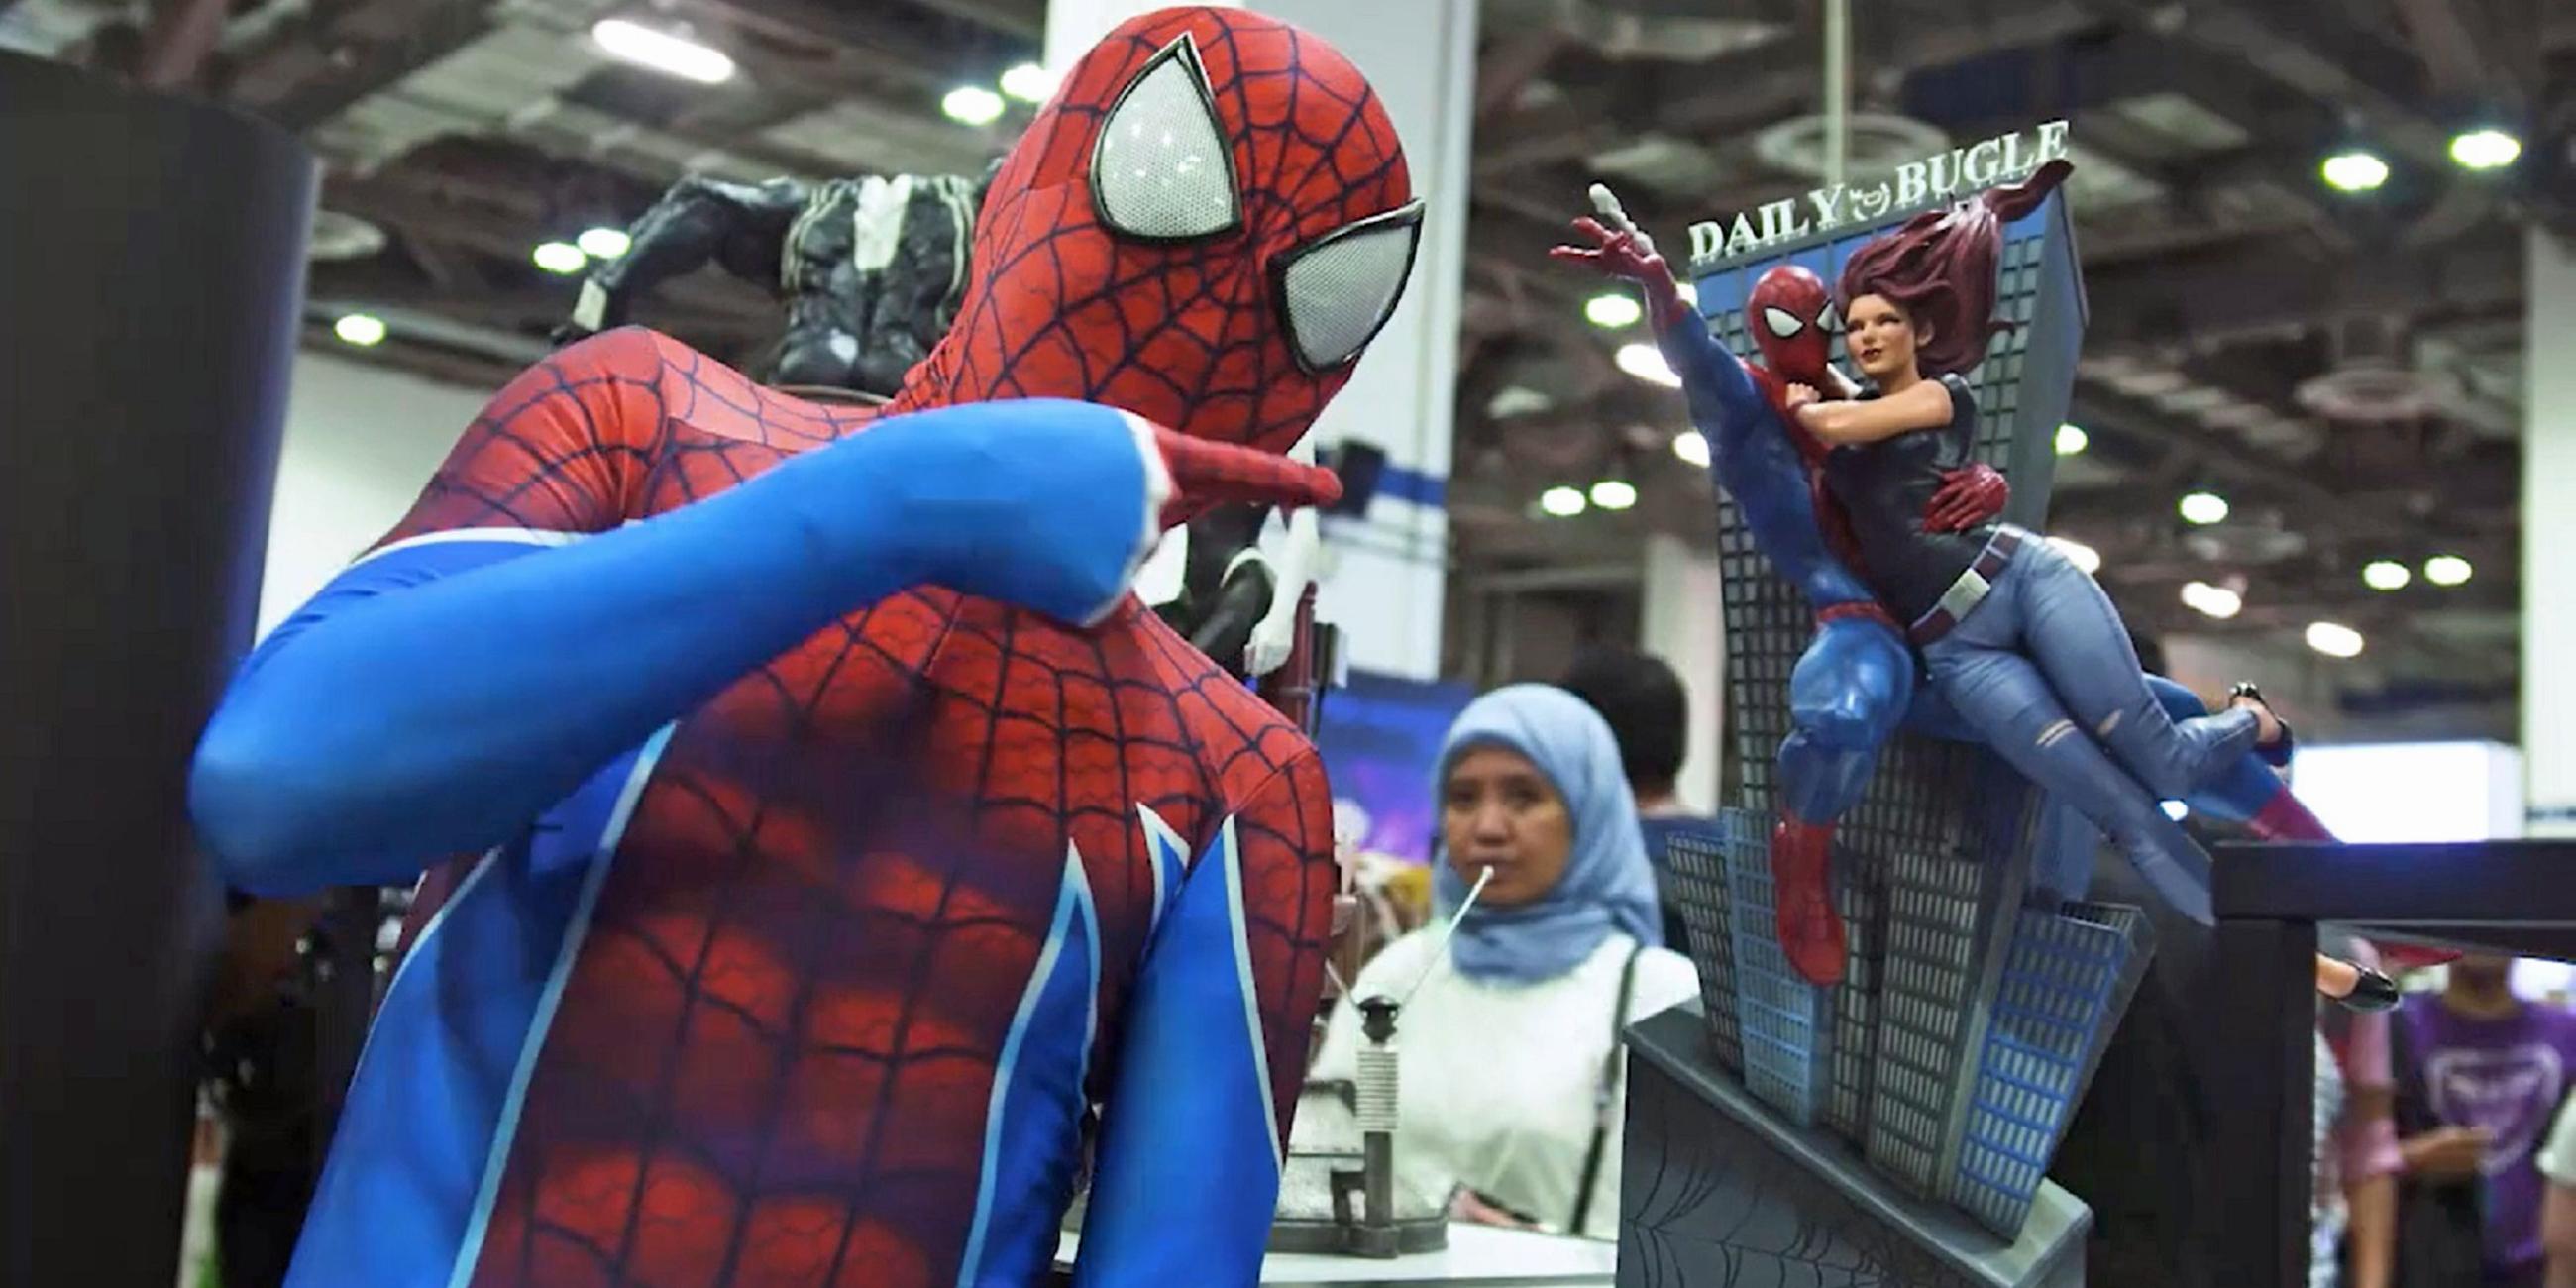 "Firmen am Abgrund: Marvel": Ein Mann im Spider-Man-Kostüm zeigt auf ein Modell von Spider-Man, das auf einem Tisch steht.